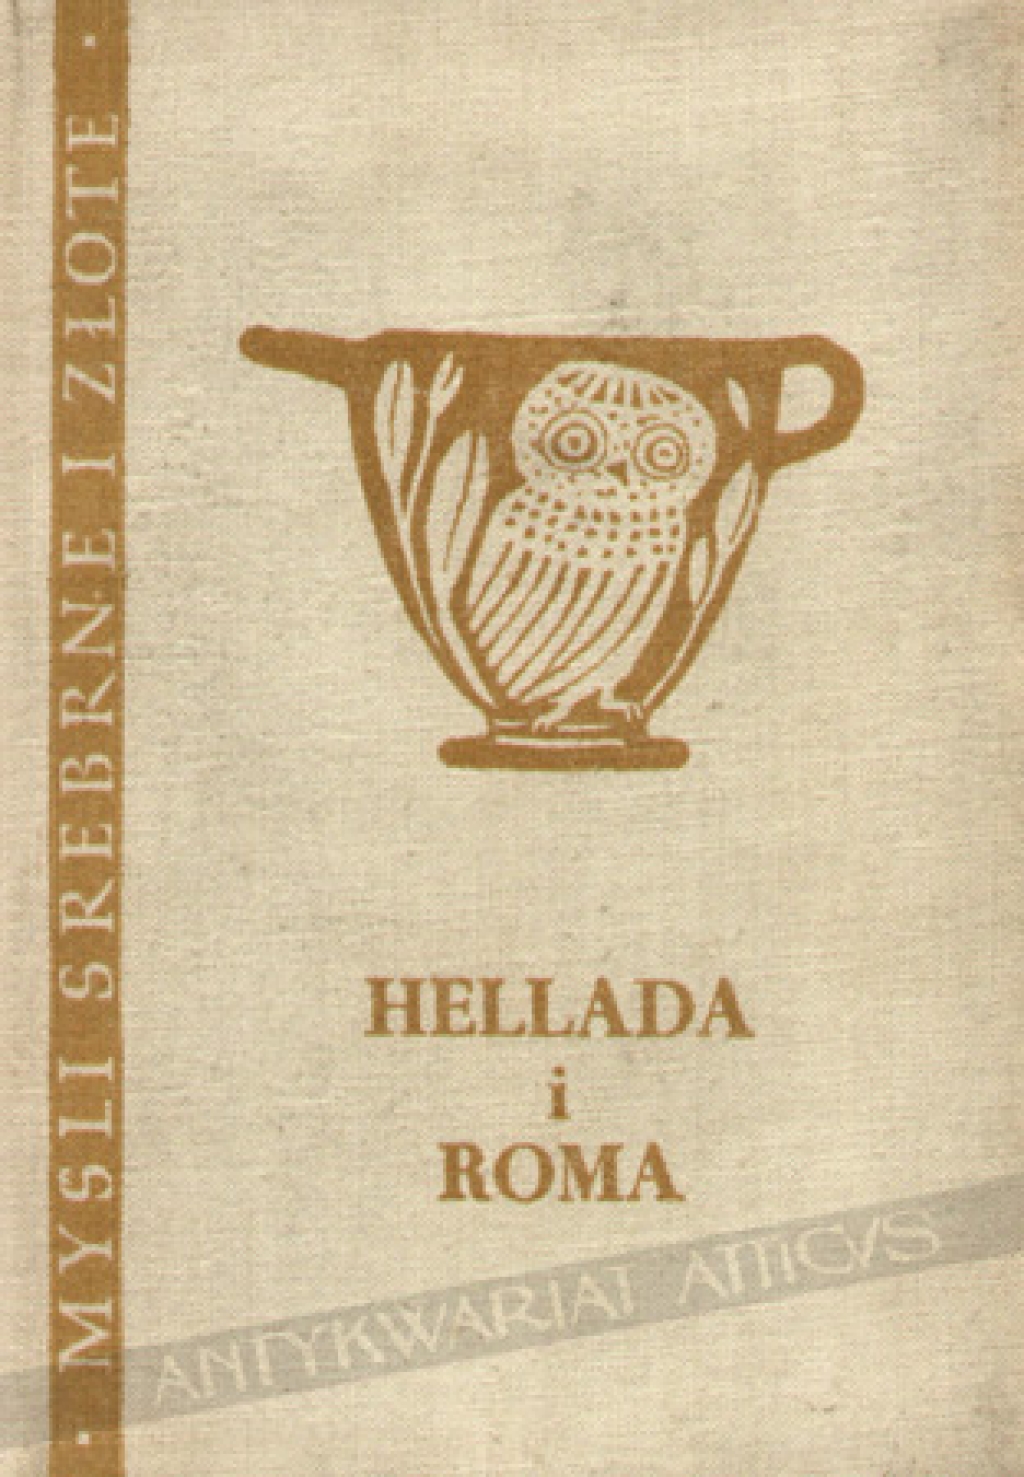 Hellada i Roma. Sentencje i aforyzmy zaczerpnięte z literatury greckiej i rzymskiej